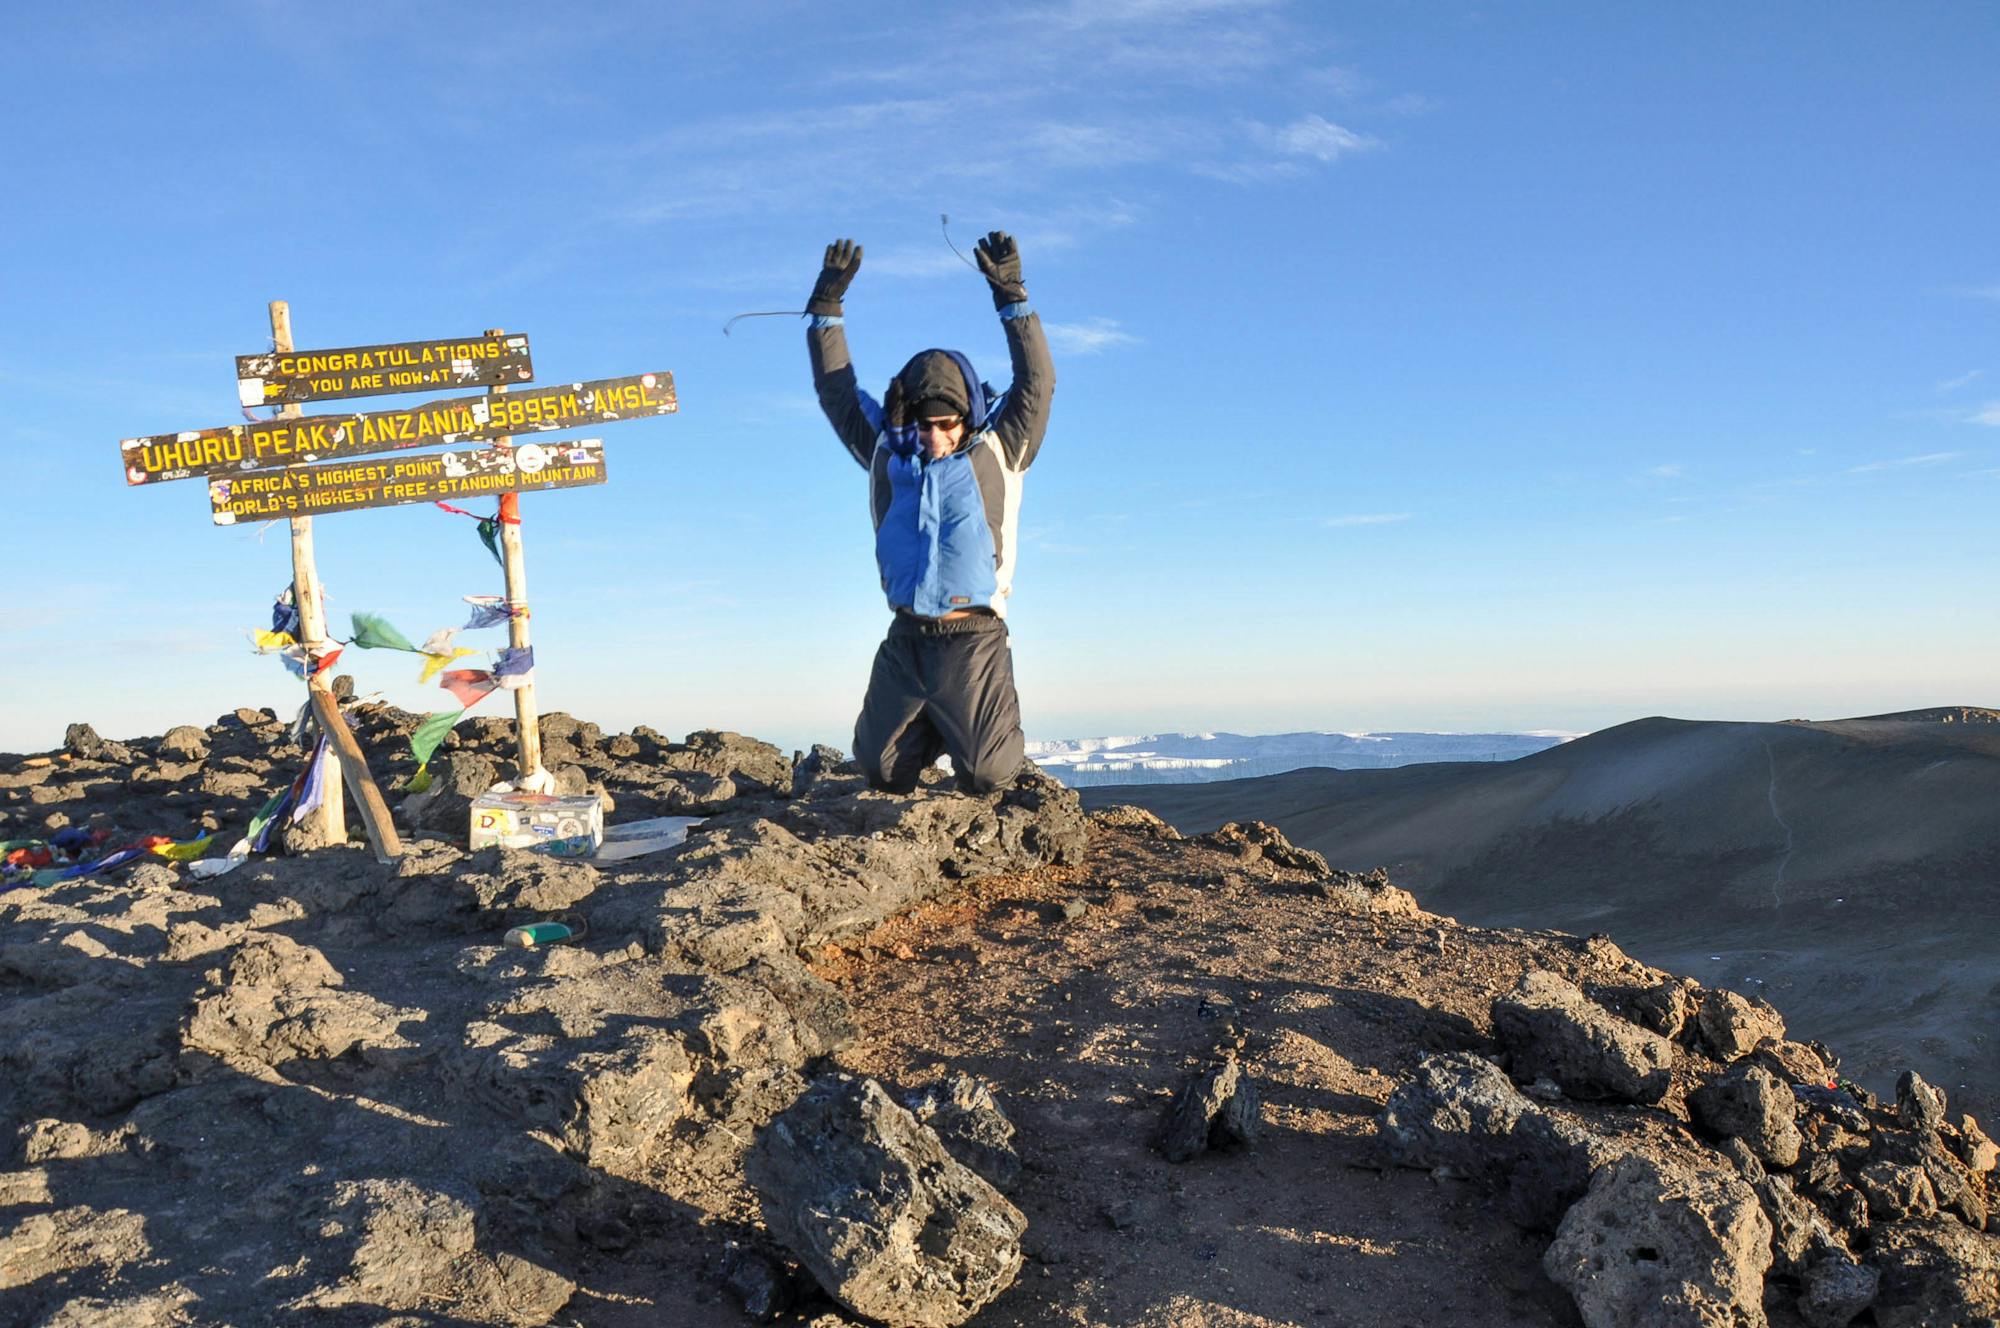 Mount Kilimanjaro: Machame Route